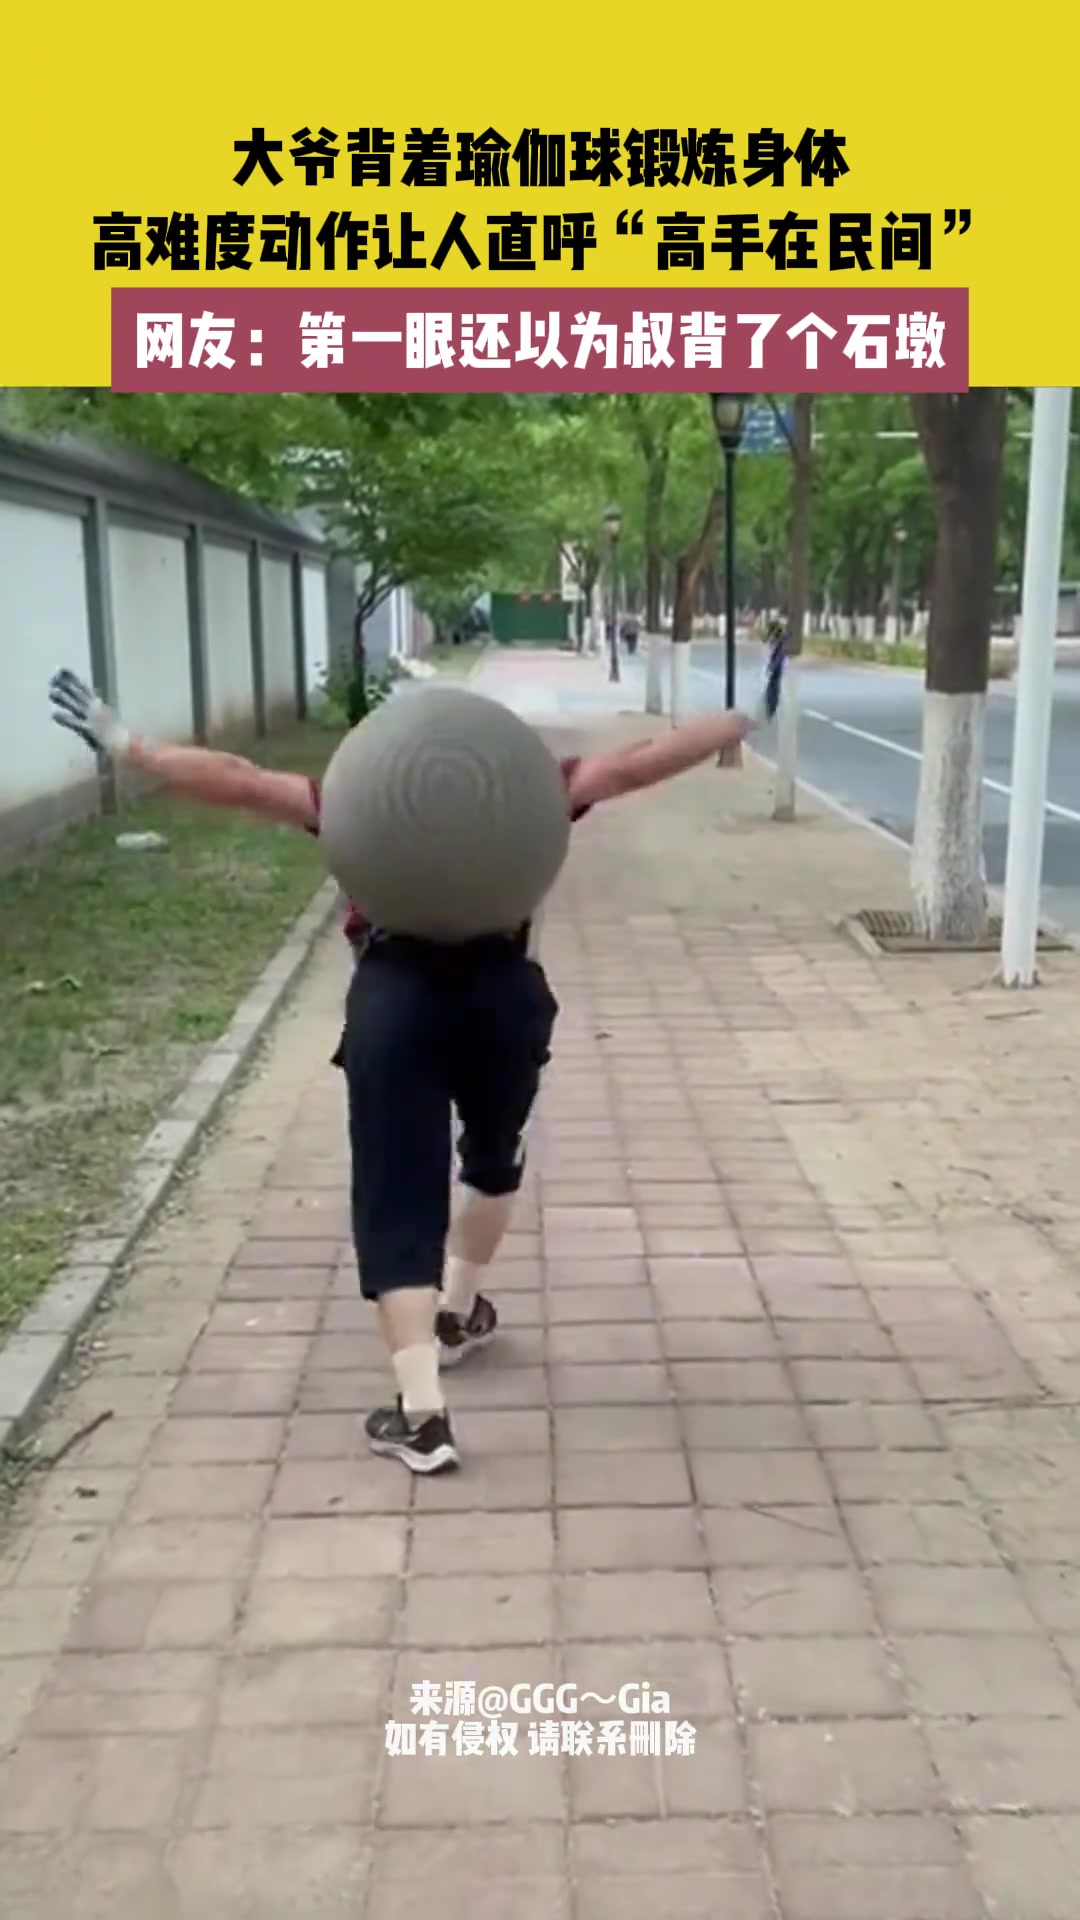 大爷背瑜伽球锻炼身体，第一眼还以为背了个石墩